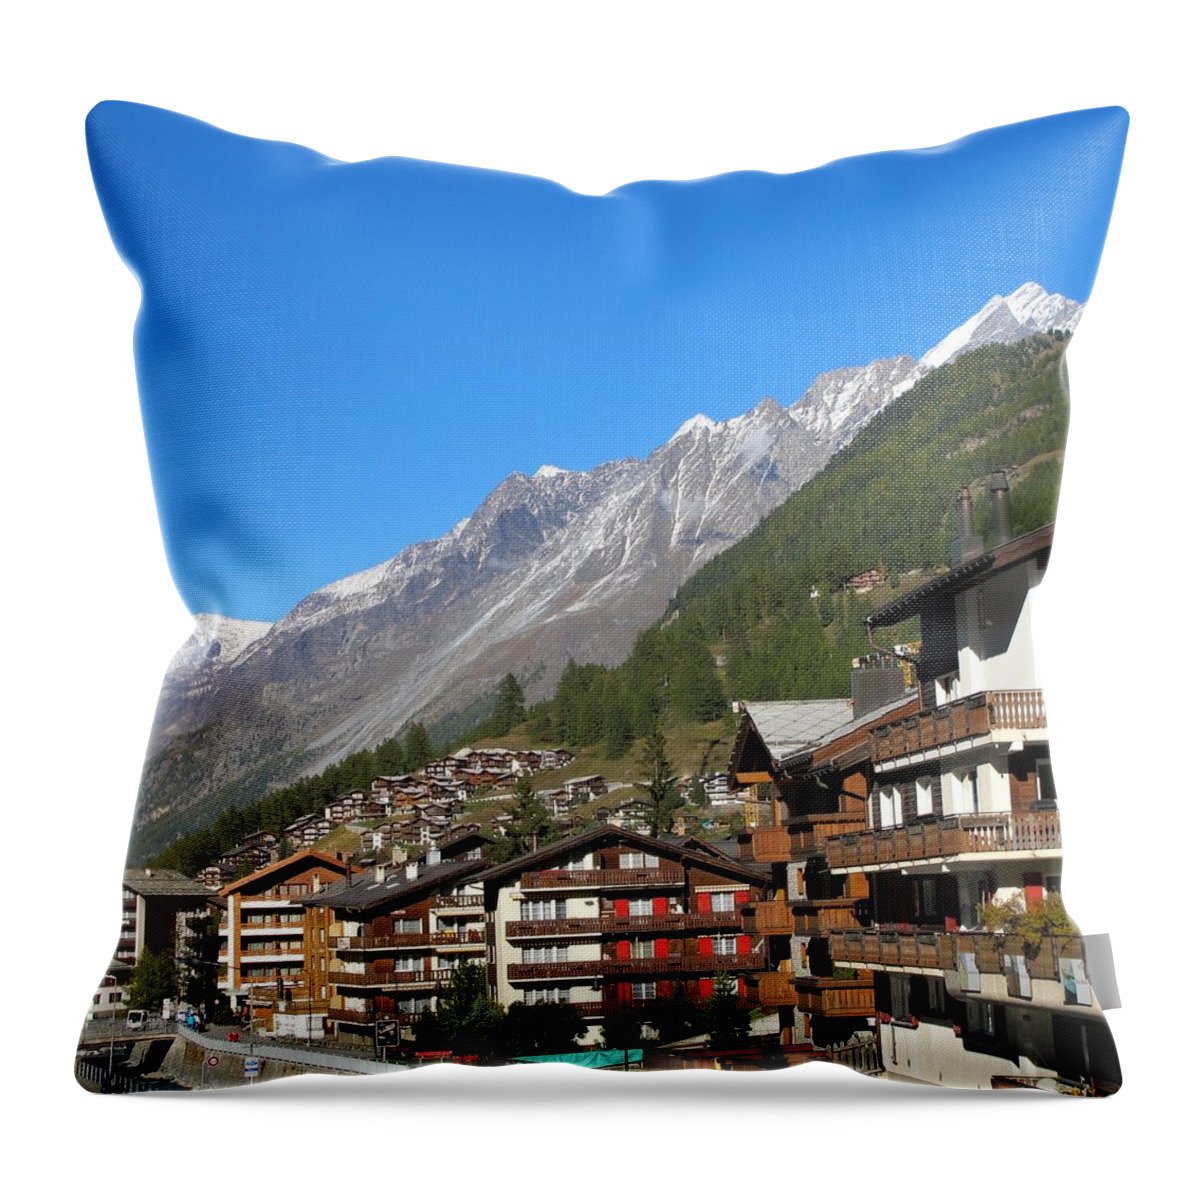 Zermatt Throw Pillow featuring the photograph Zermatt view by Sue Morris